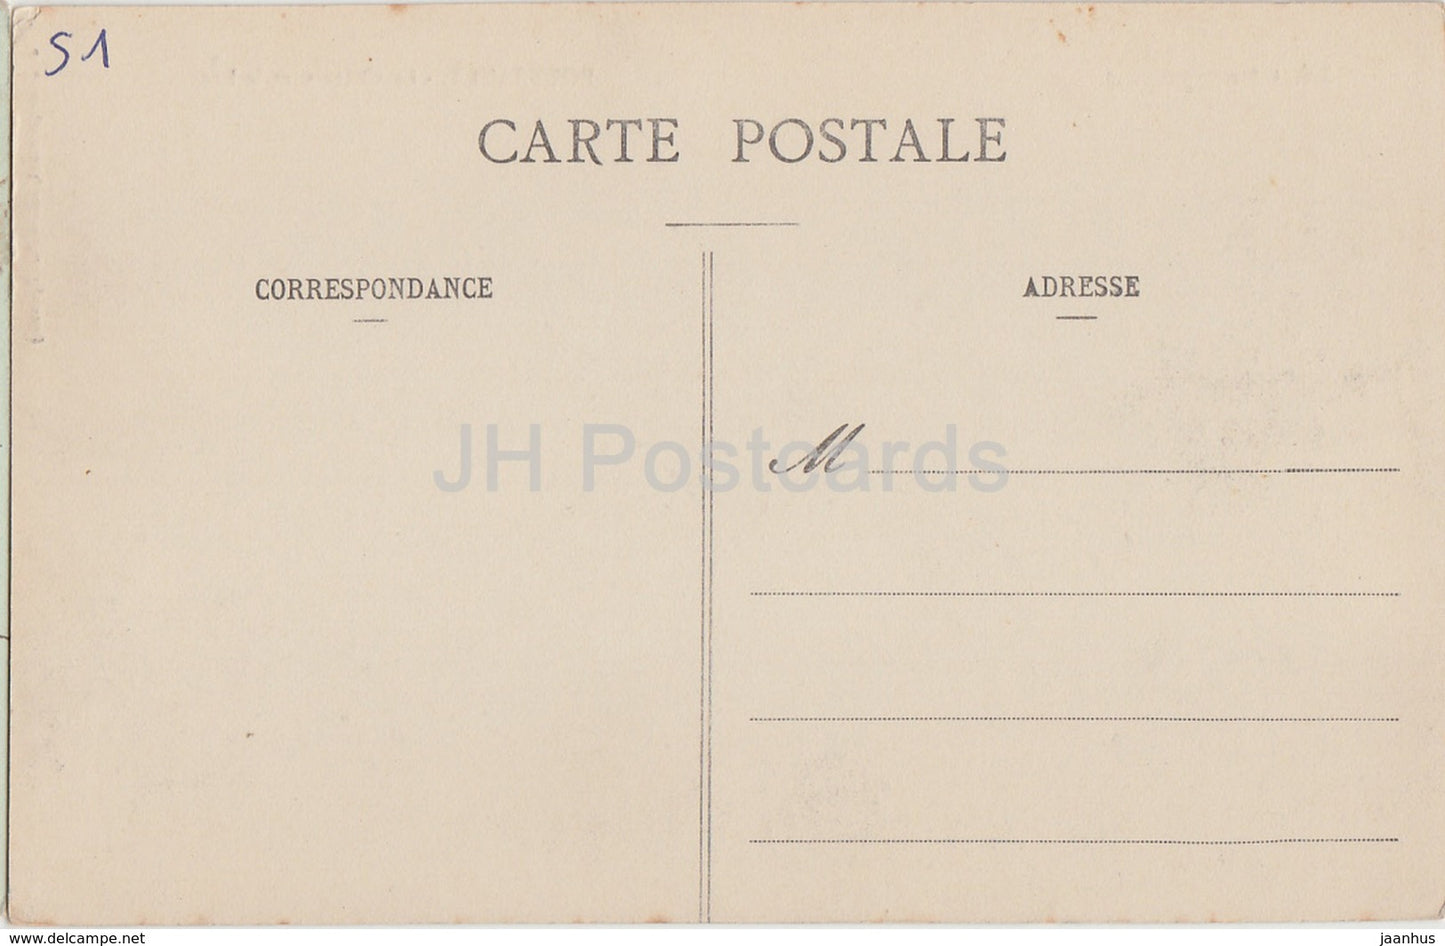 La Champagne - Boursault - Le Château et le Lac - château - carte postale ancienne - France - inutilisée